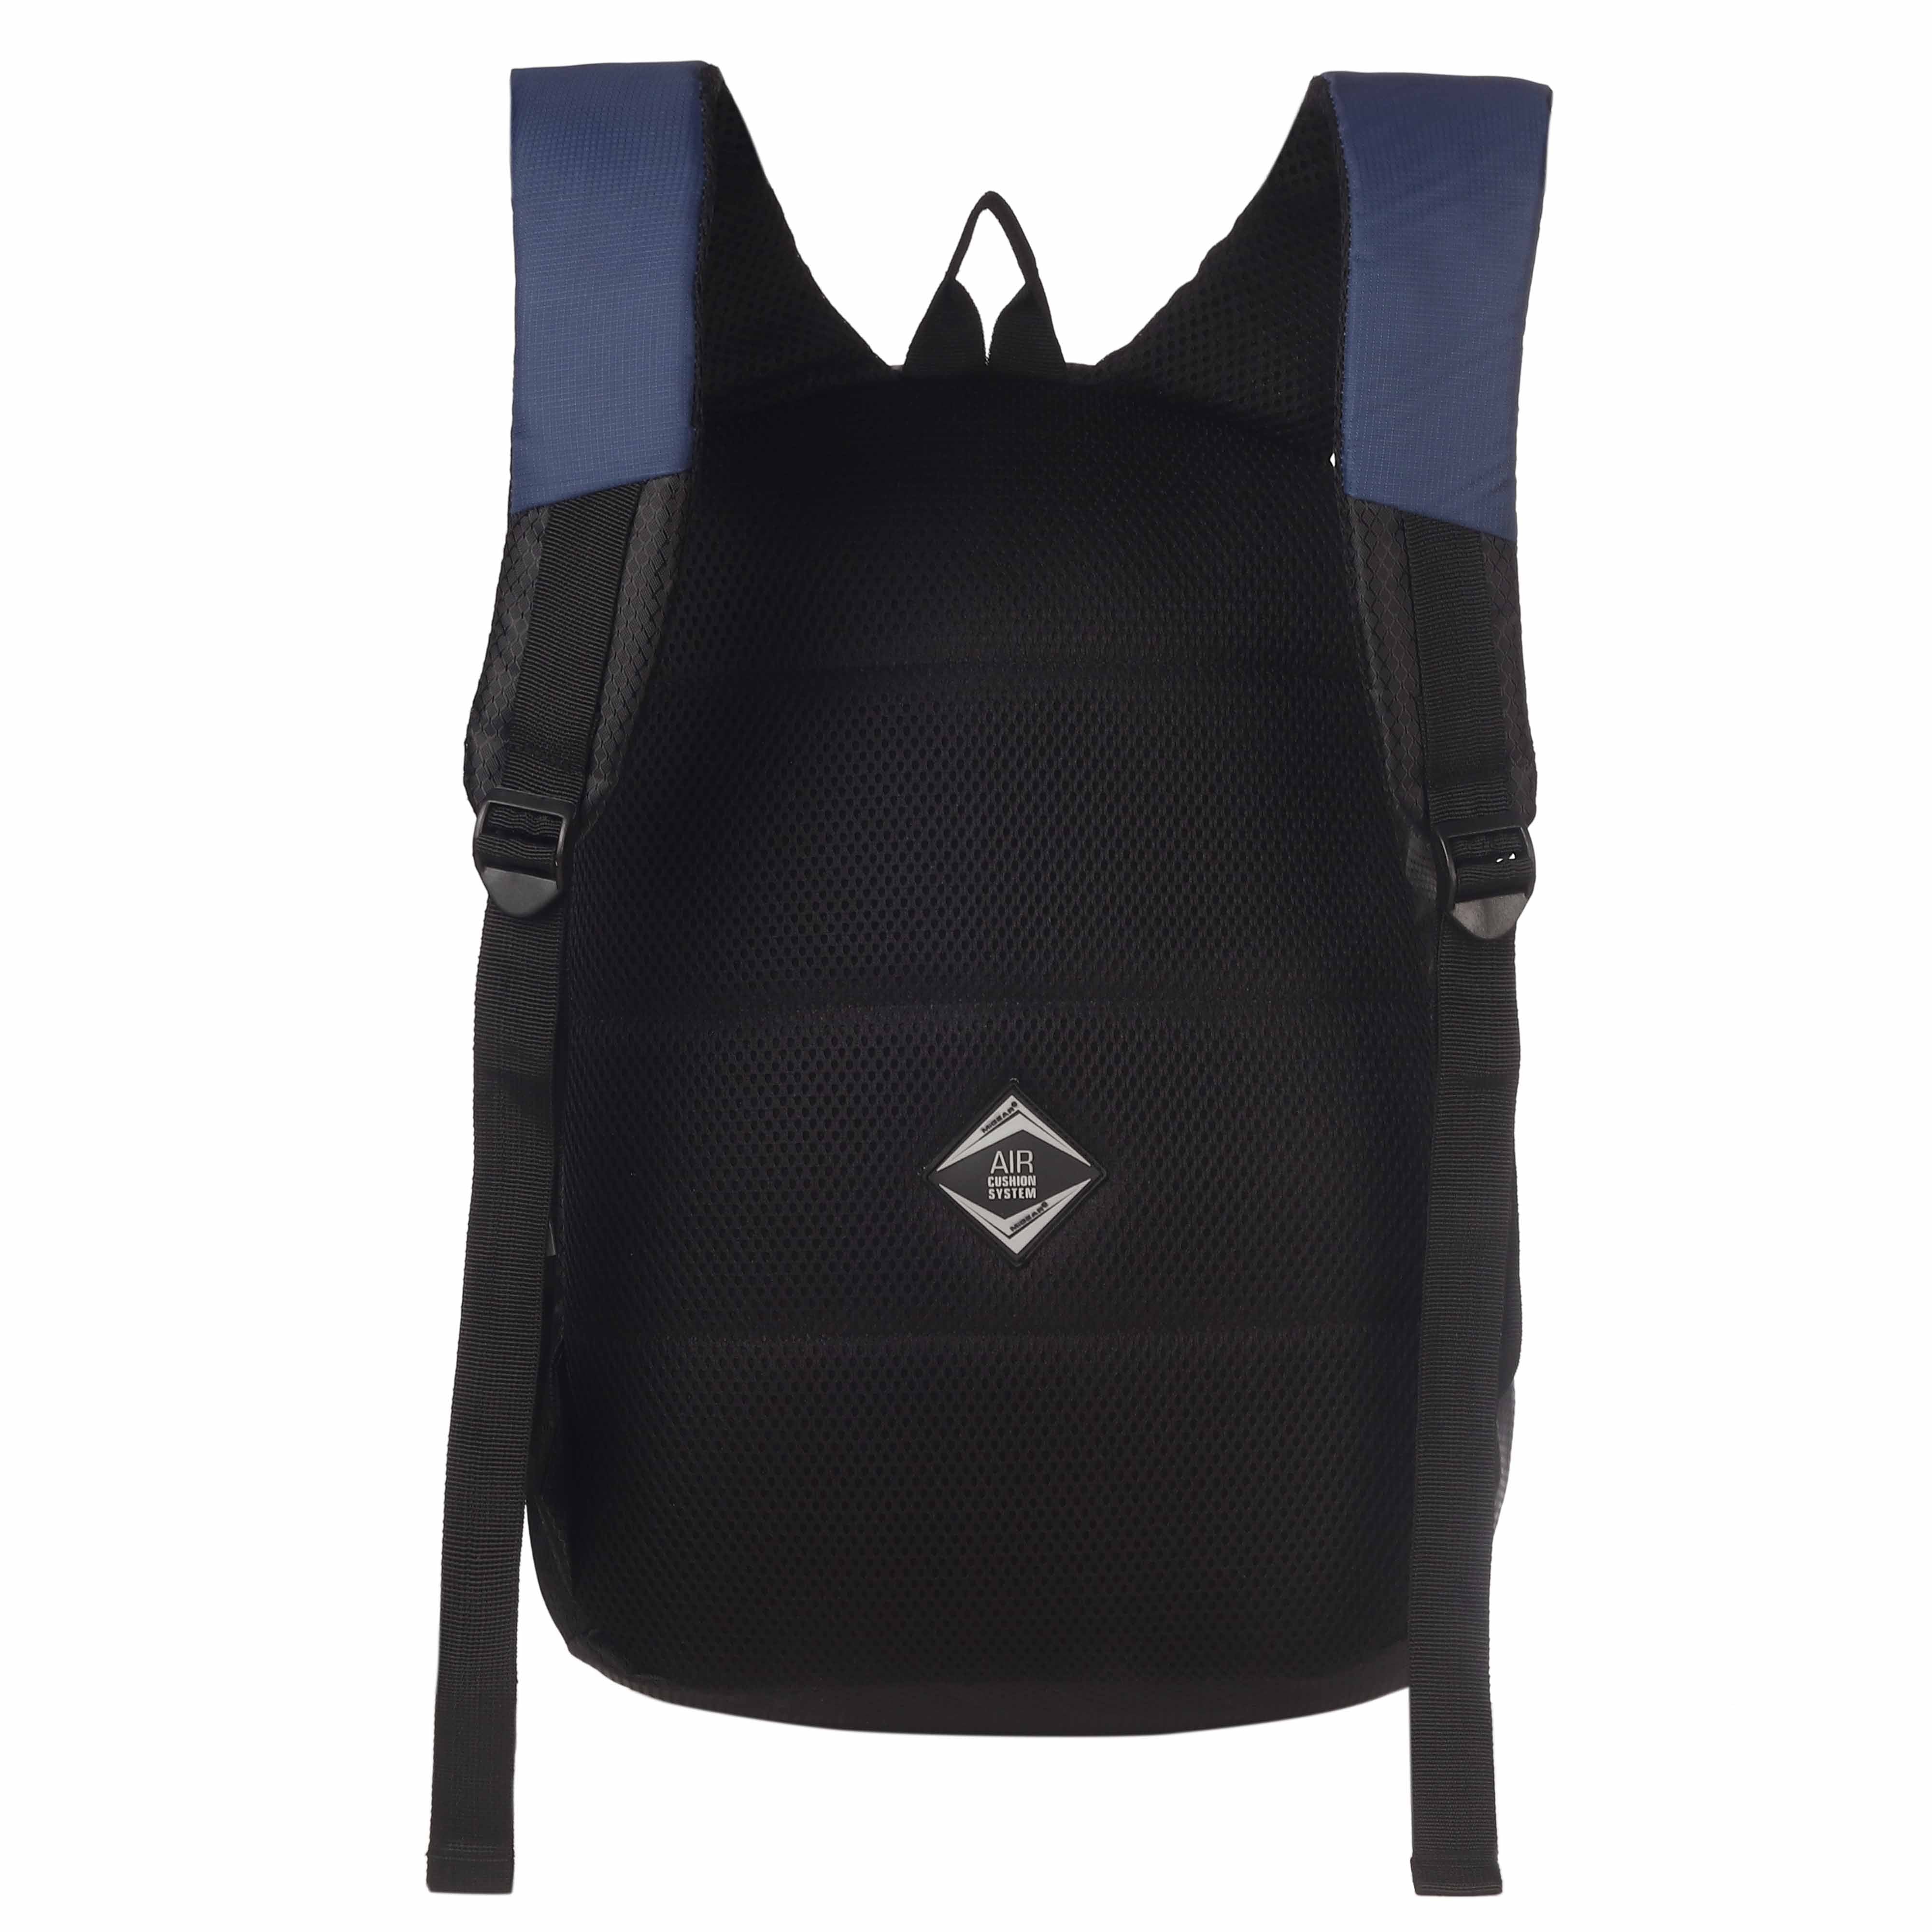 VentureVault Backpack